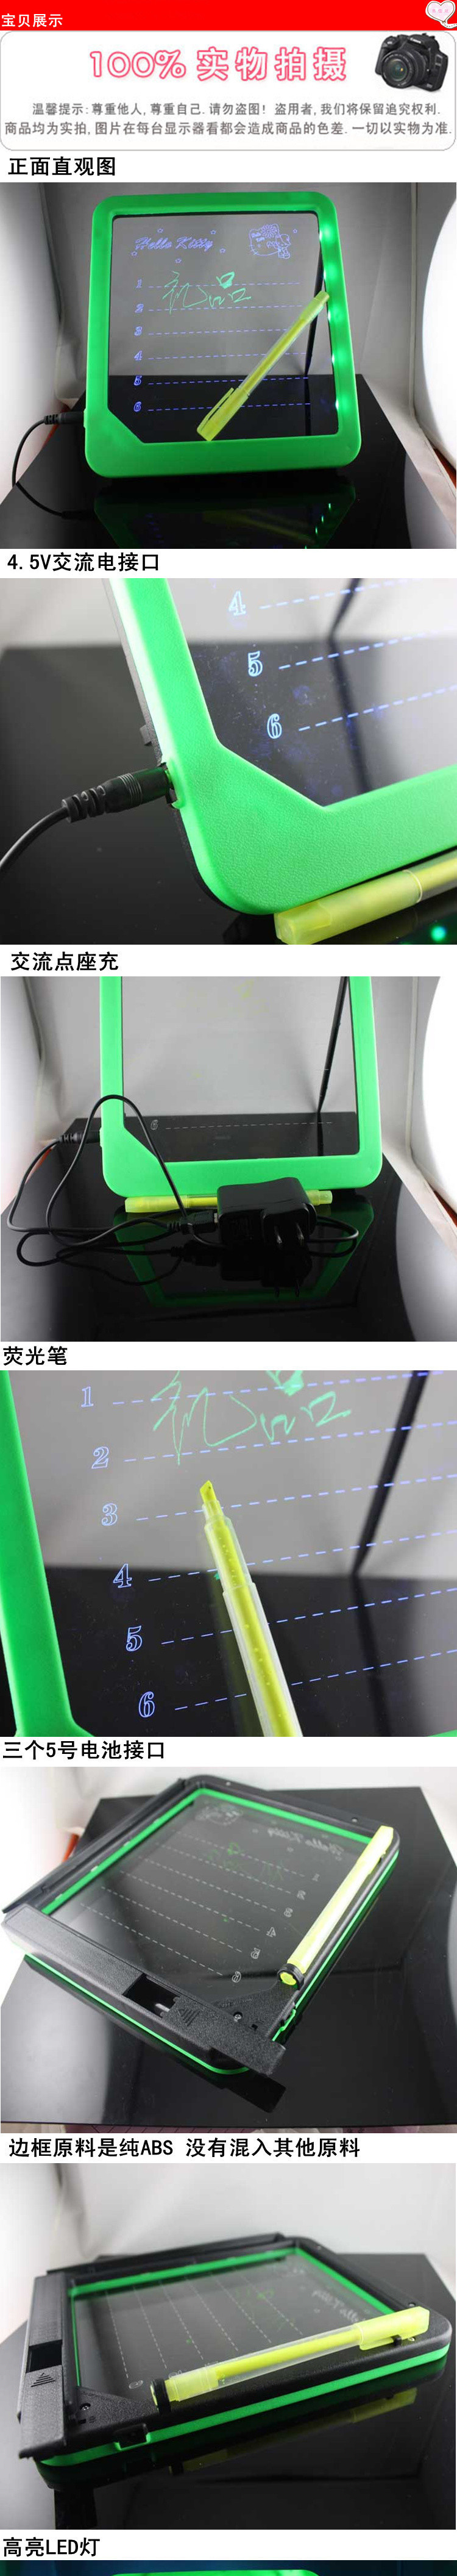 厂家直销留言发光板手写荧光板 创意广告板发光板 LED电子荧光板示例图3